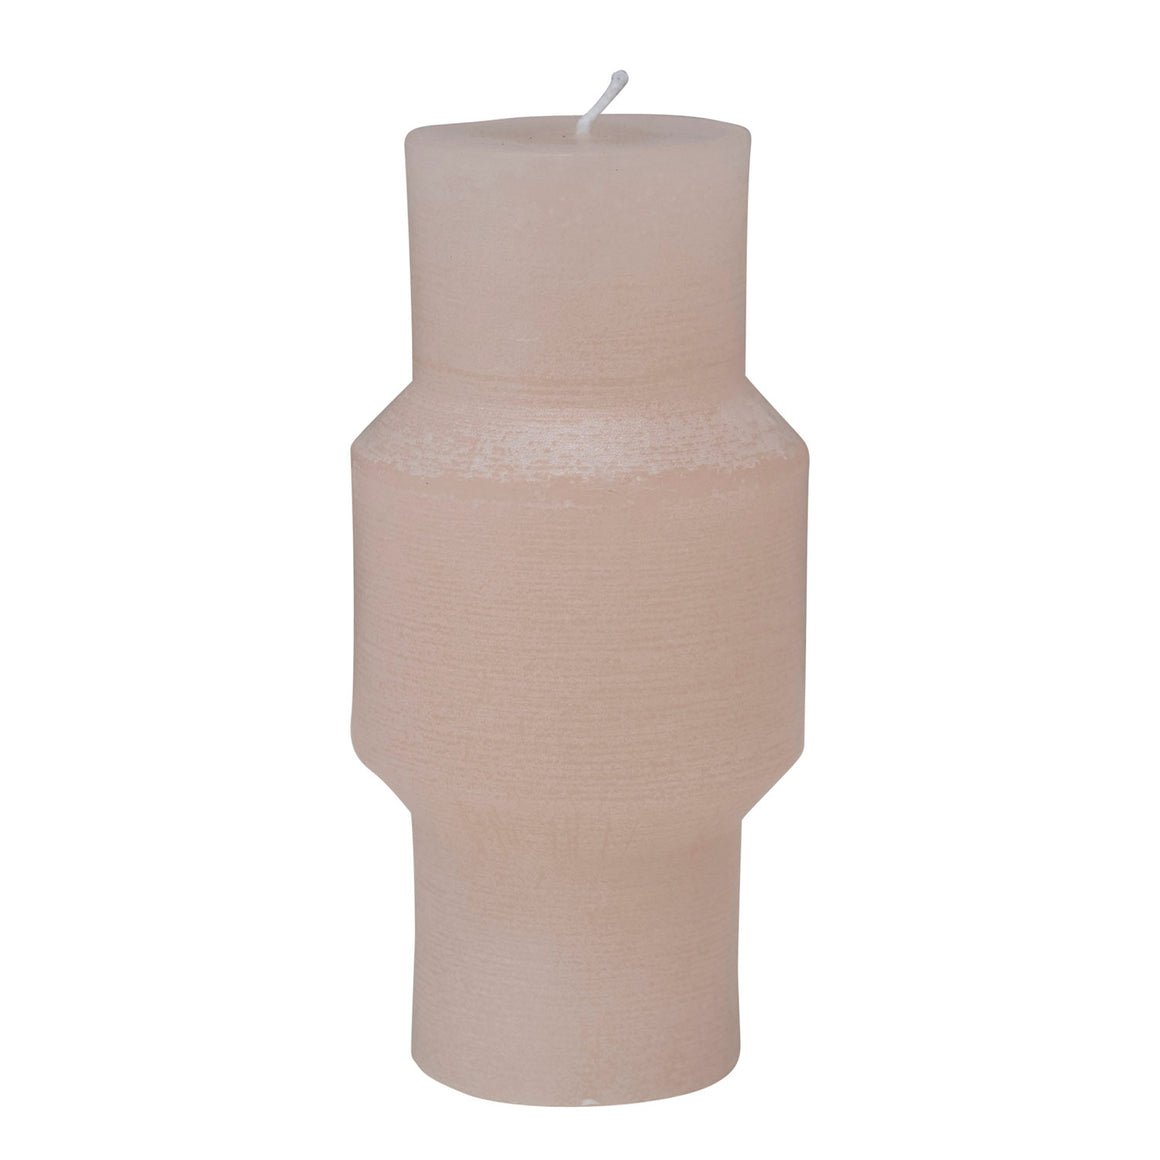 Geo 2 Quartz Pillar Candle - Medium